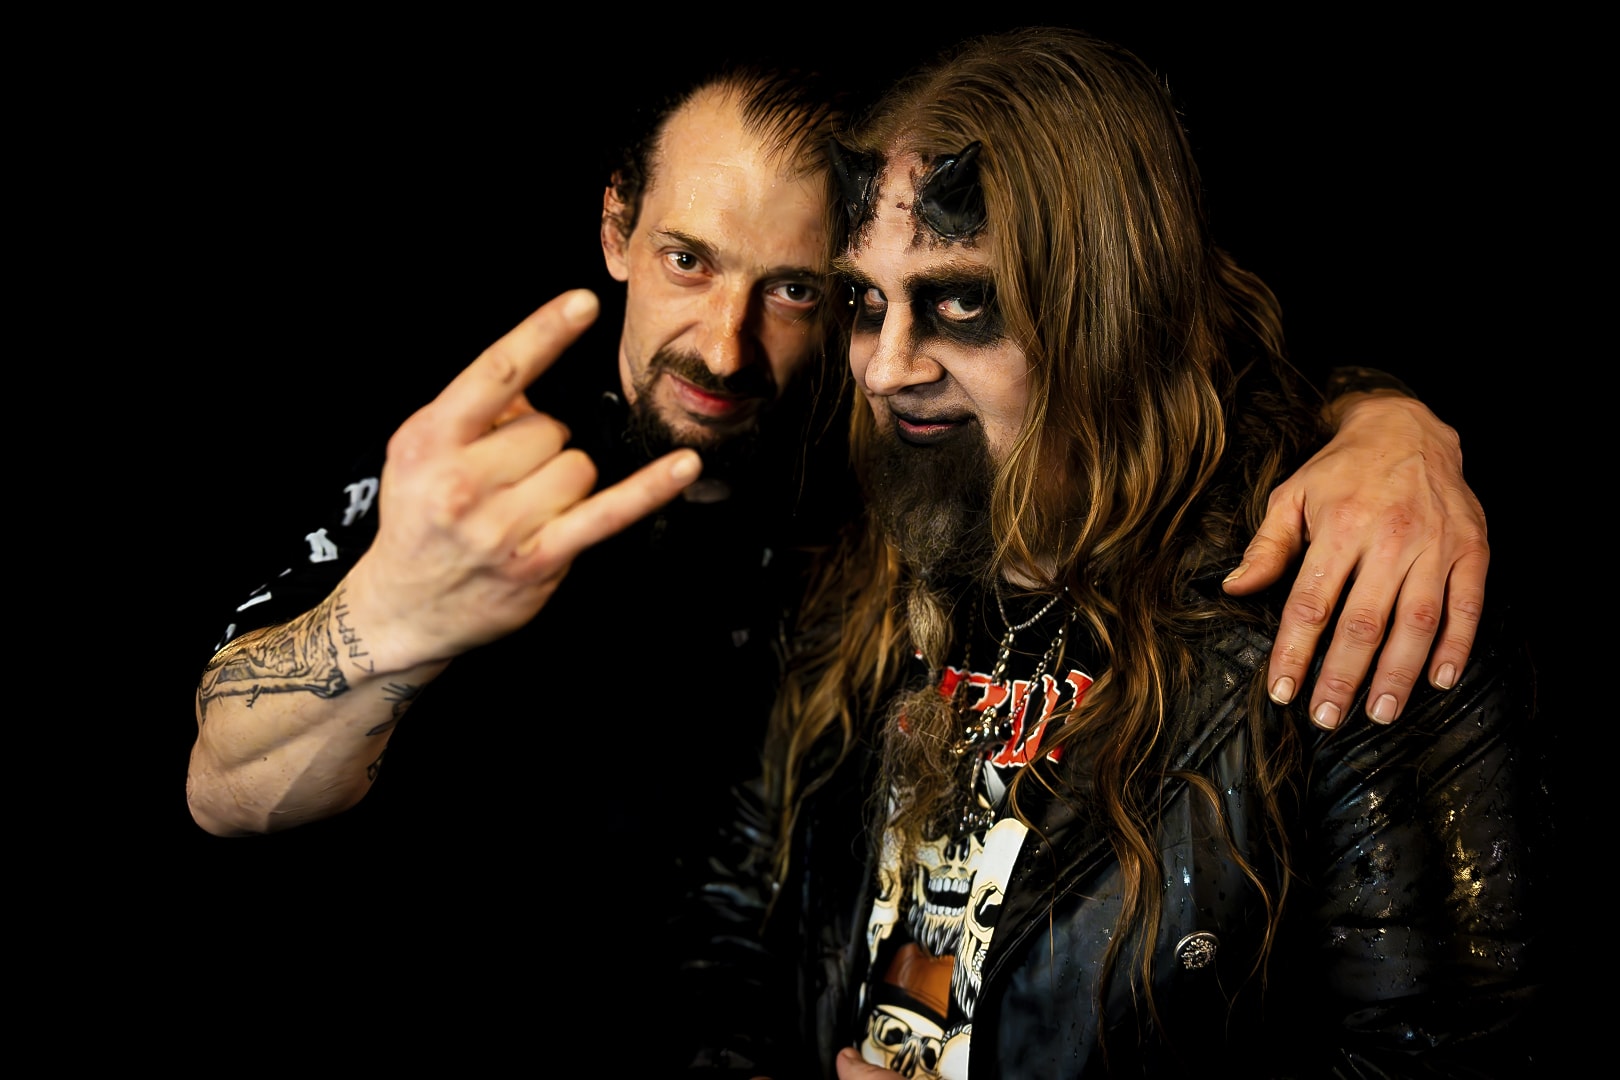 Zwei Männer in Leder und mit Metall-Musik-Outfits.